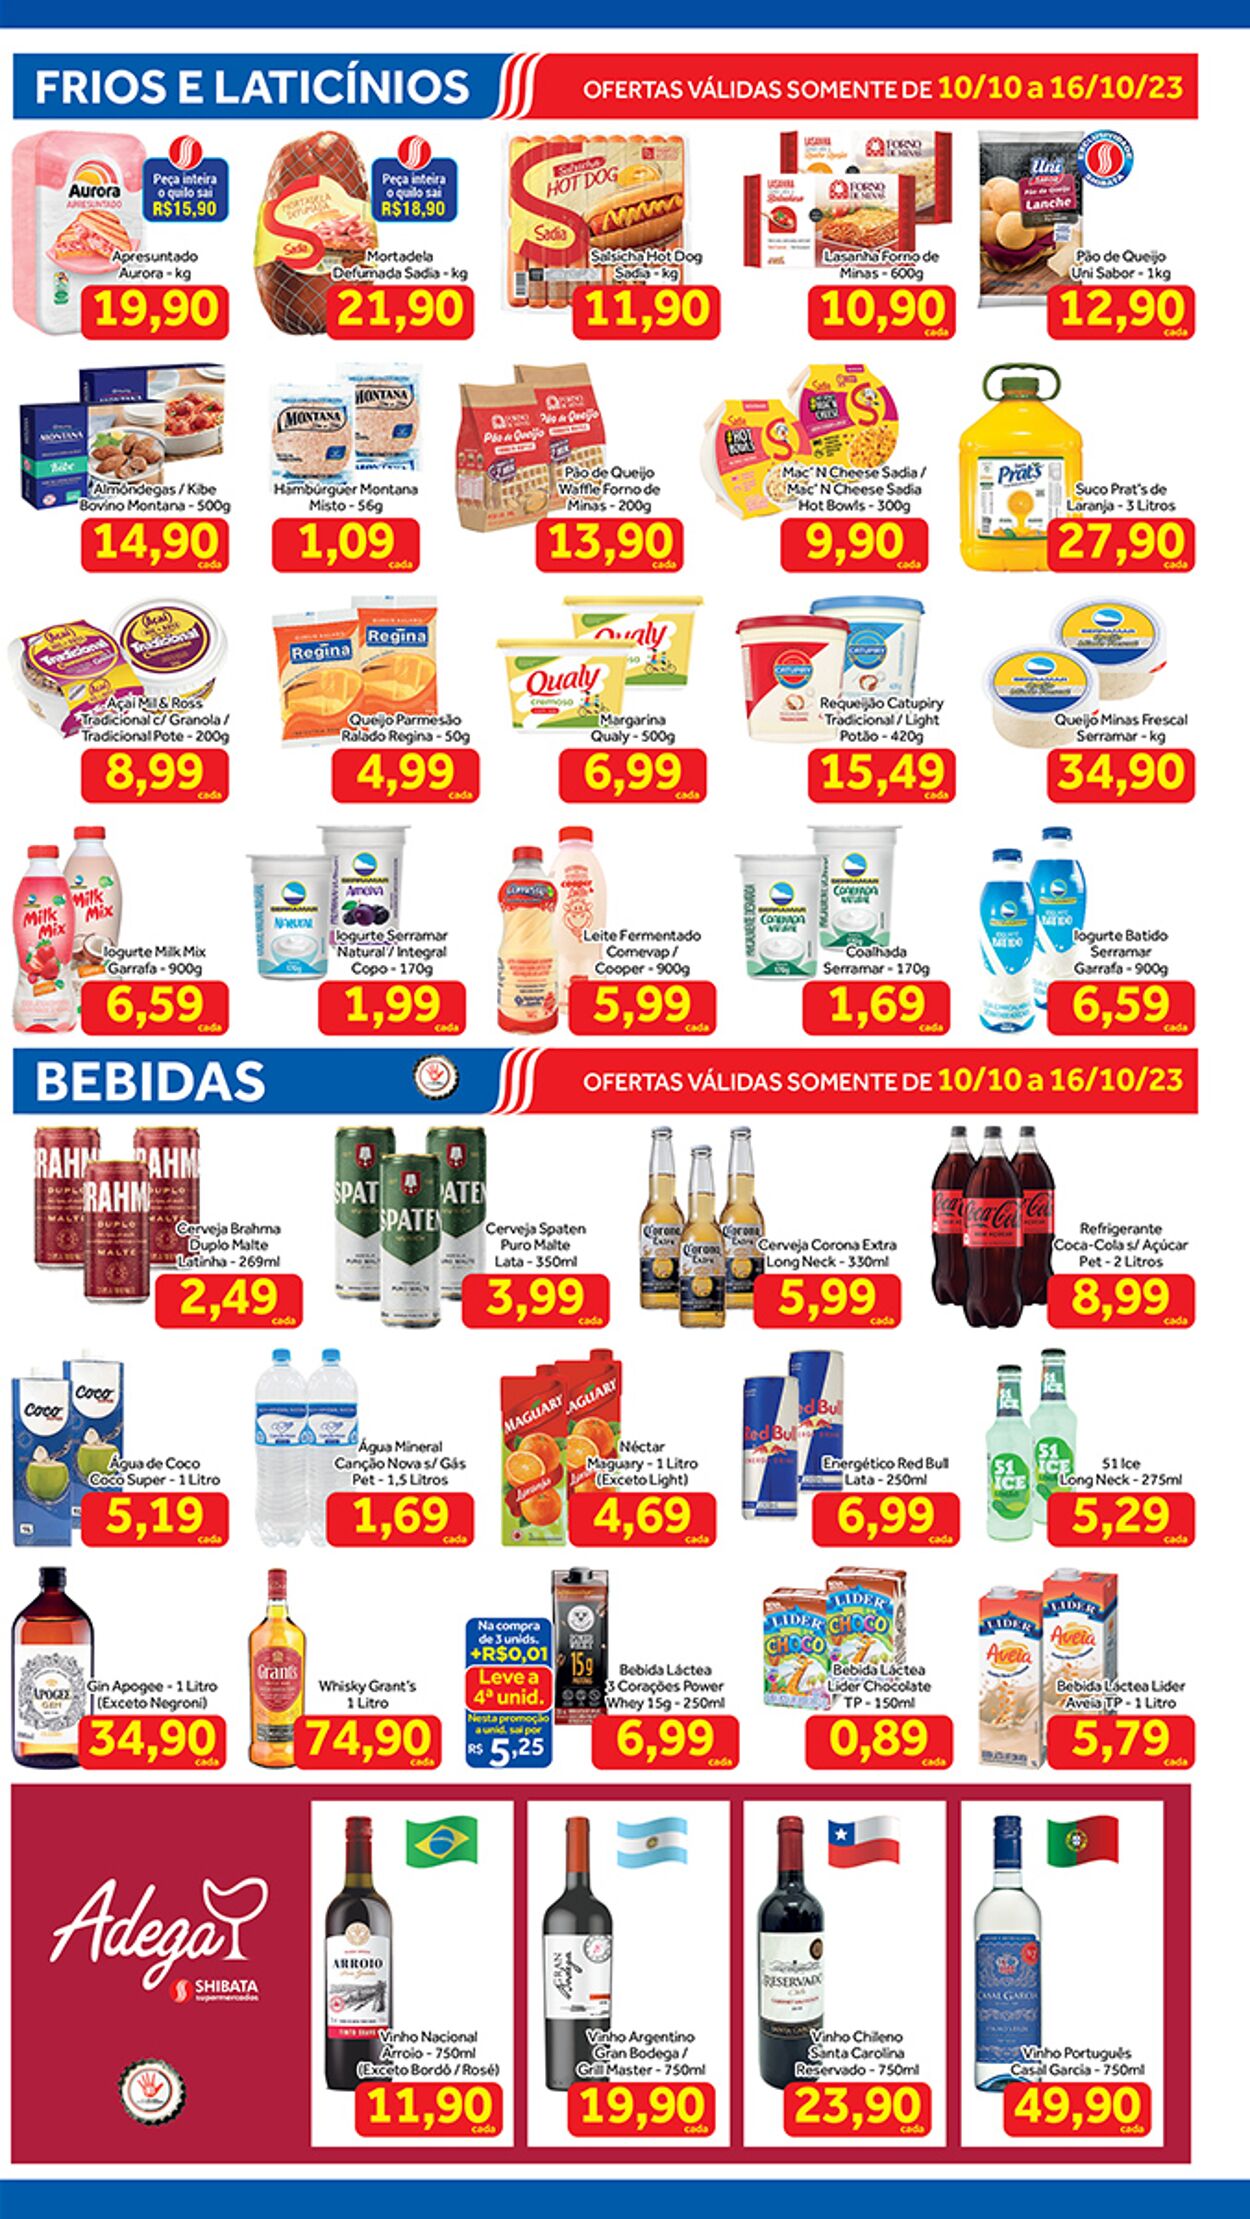 Folheto Shibata Supermercados 10.10.2023 - 16.10.2023